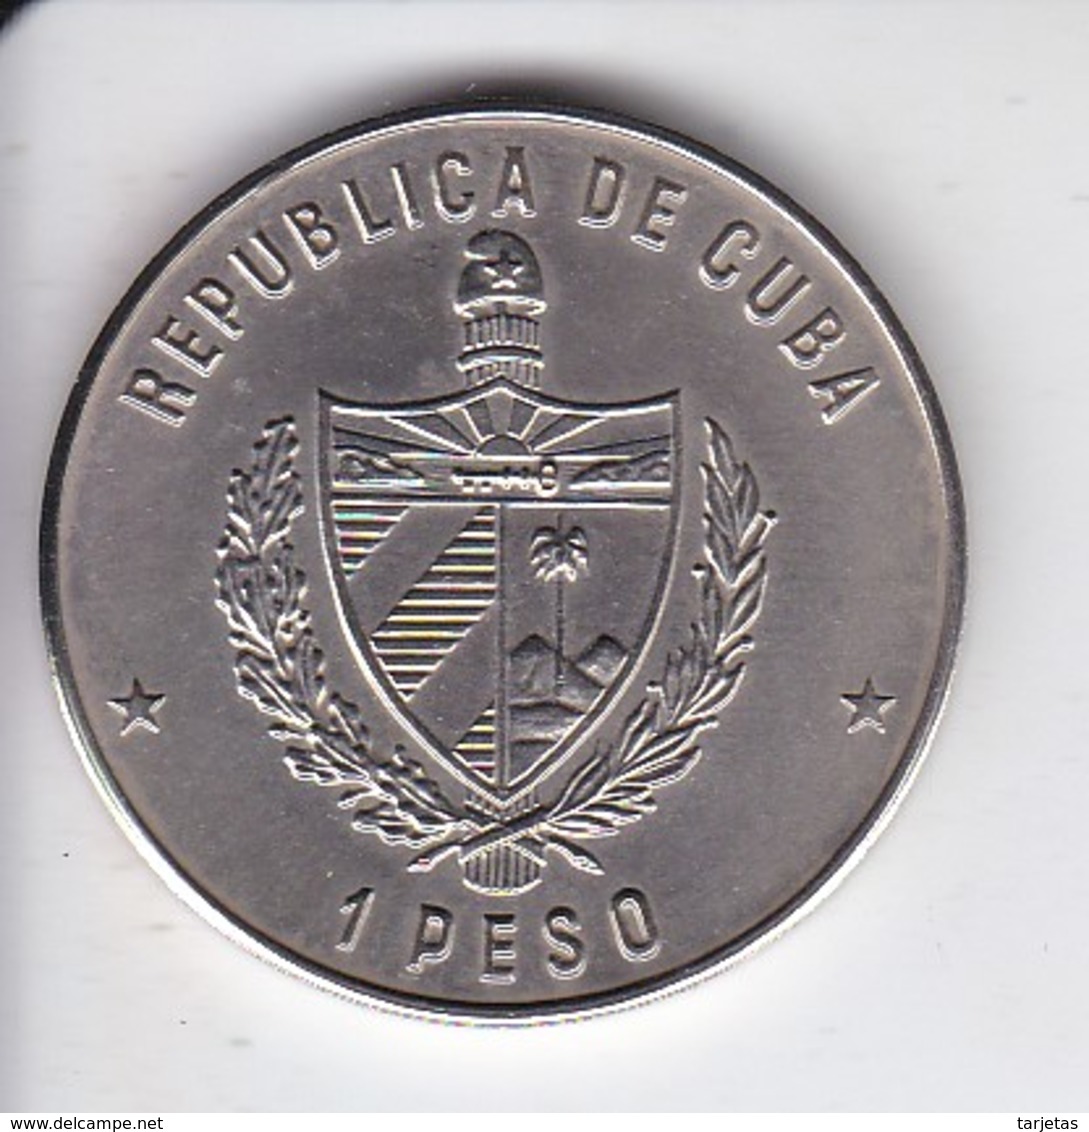 MONEDA DE CUBA DE 1 PESO DEL AÑO 1985 DE UNA IGUANA (COIN) SIN CIRCULAR-UNCIRCULATED - Cuba